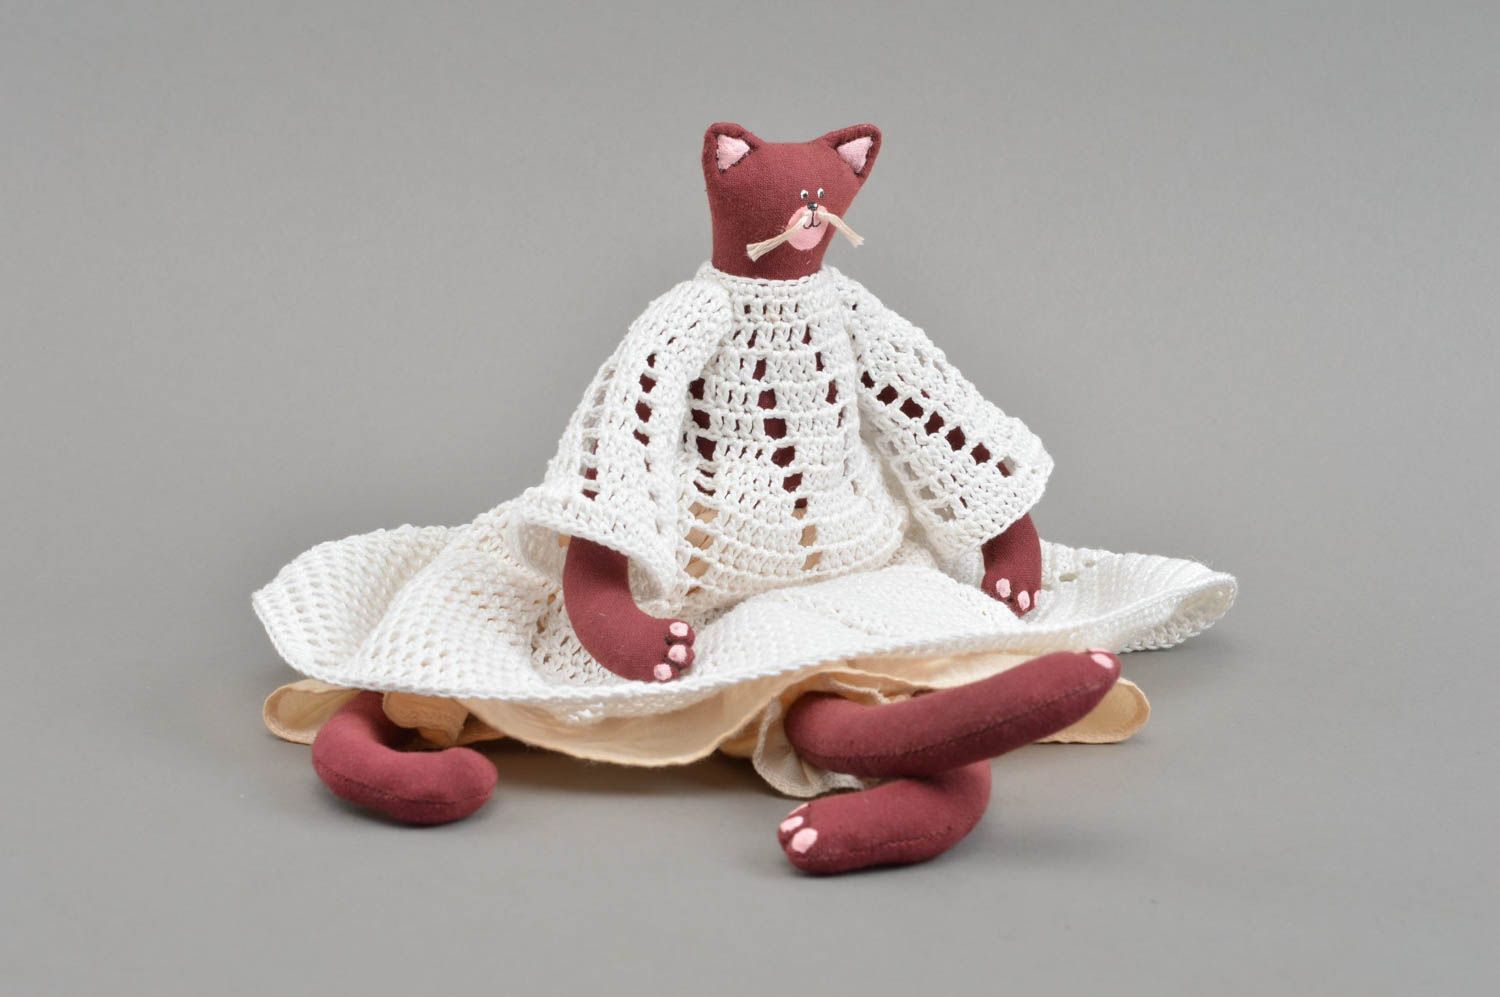 Тканевая игрушка кошка бордовая в вязаном платье красивая небольшая хэнд мейд фото 4